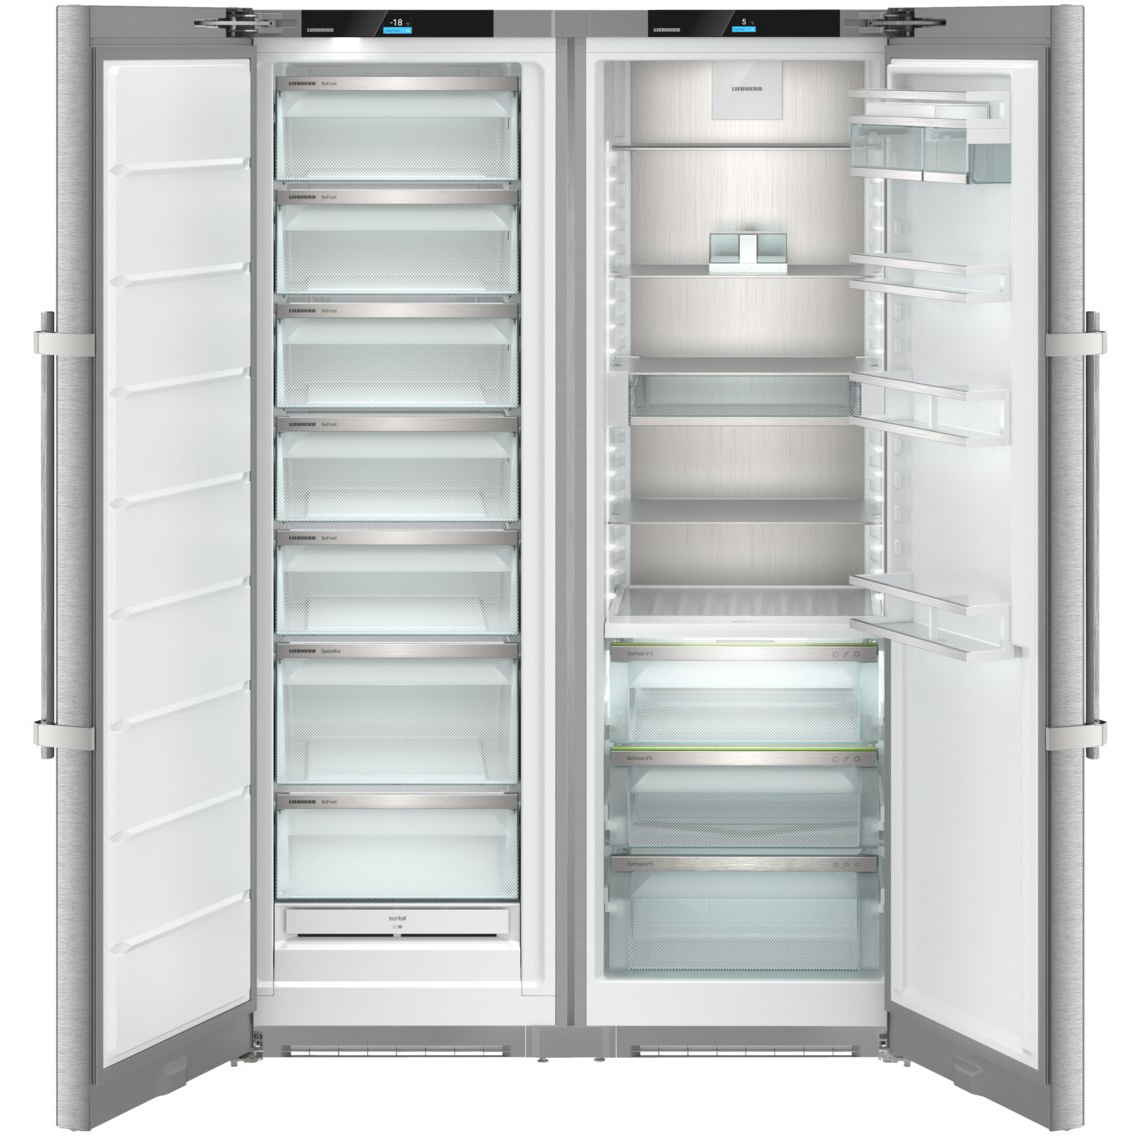 Холодильник Liebherr XRFsd 5255